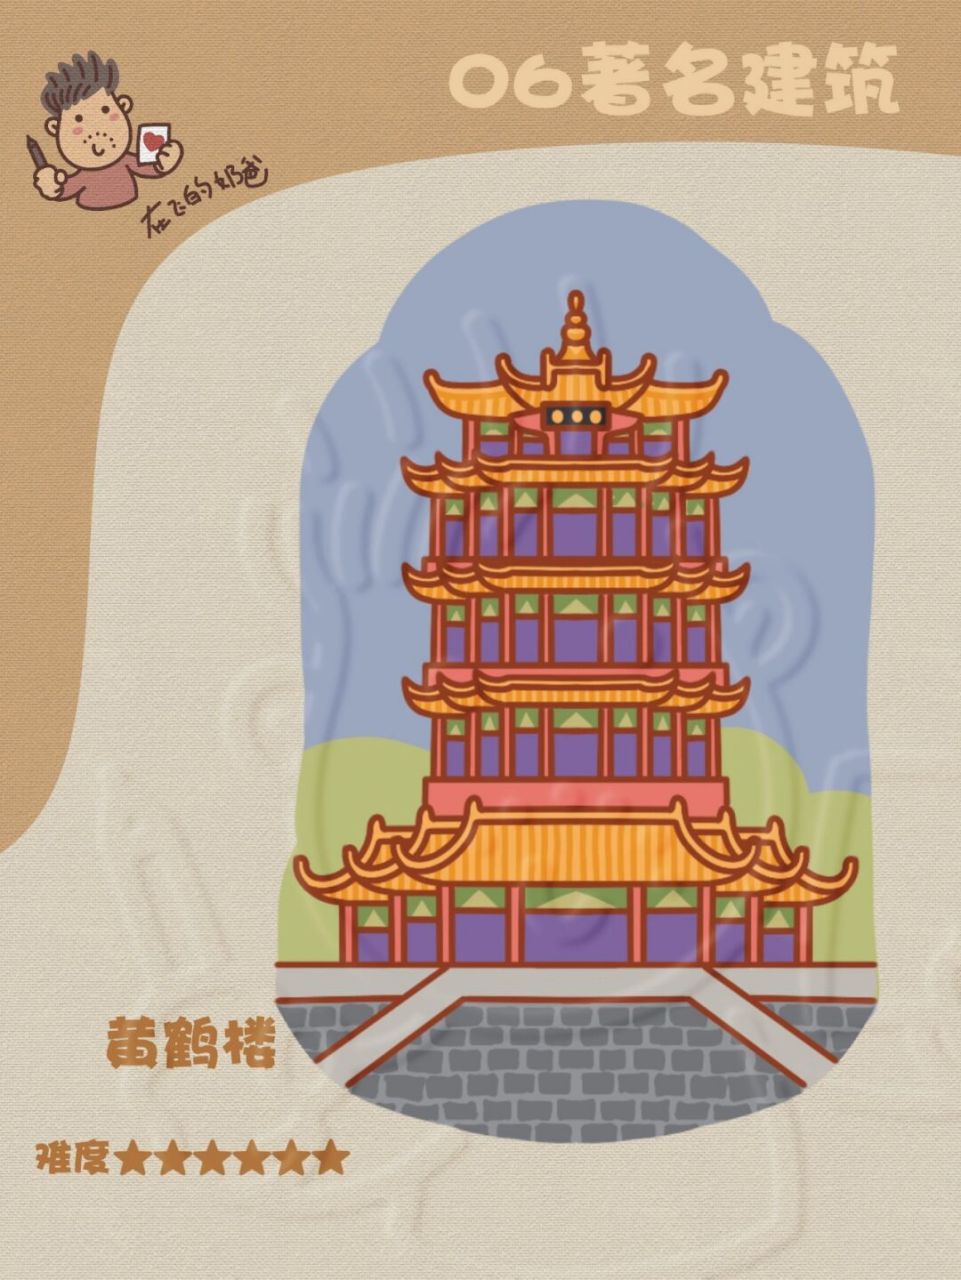 黄鹤楼 简笔画 黄鹤楼位于武昌江畔,紧邻长江大桥,有天下江山第一楼